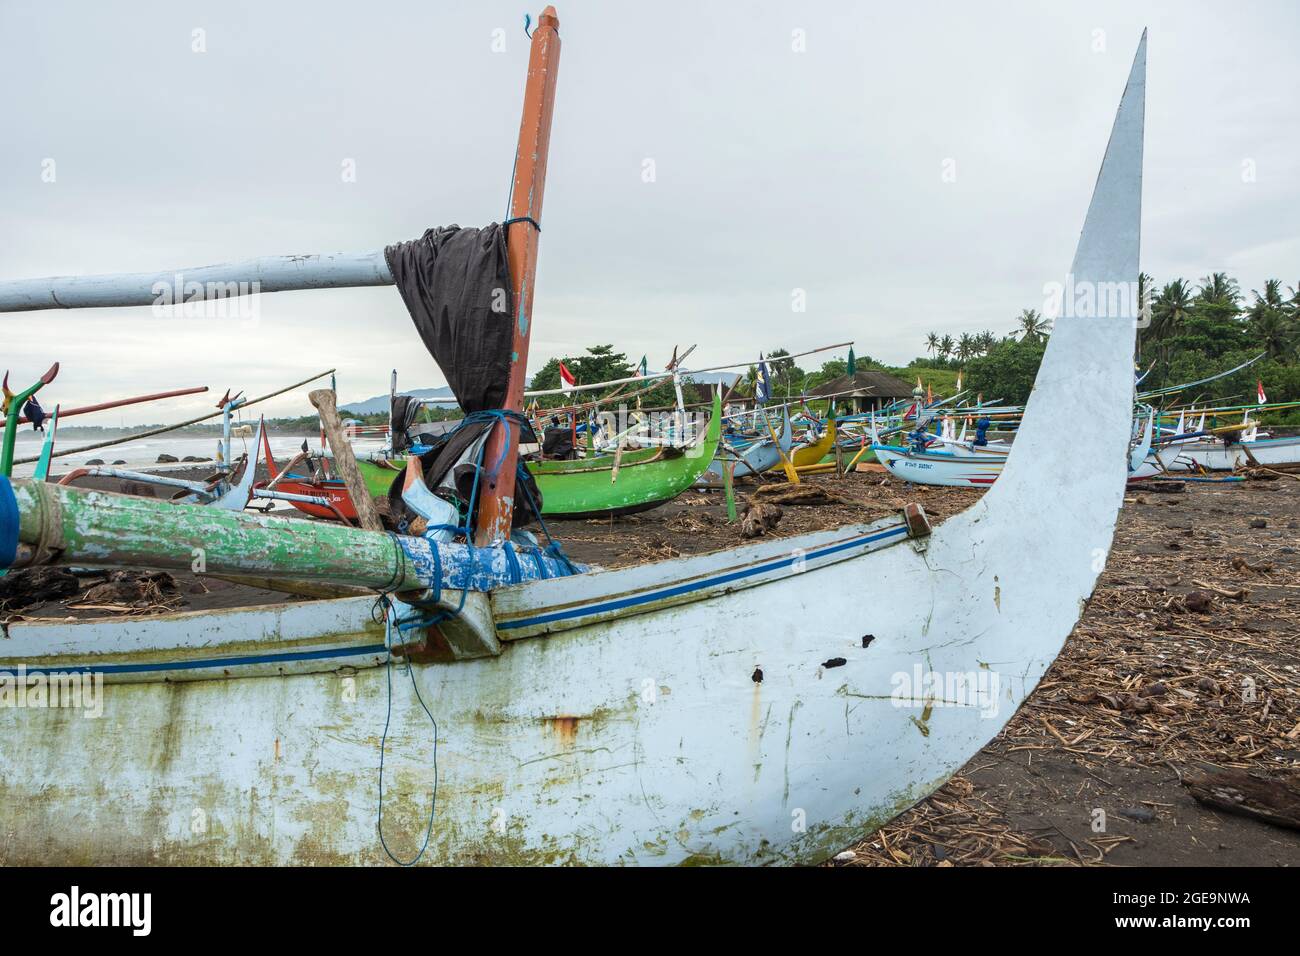 Bateaux de pêche à outrigger (Jukungs) amarrés sur la plage près de Pemuteran, côte nord-ouest de Bali, Indonésie. Banque D'Images